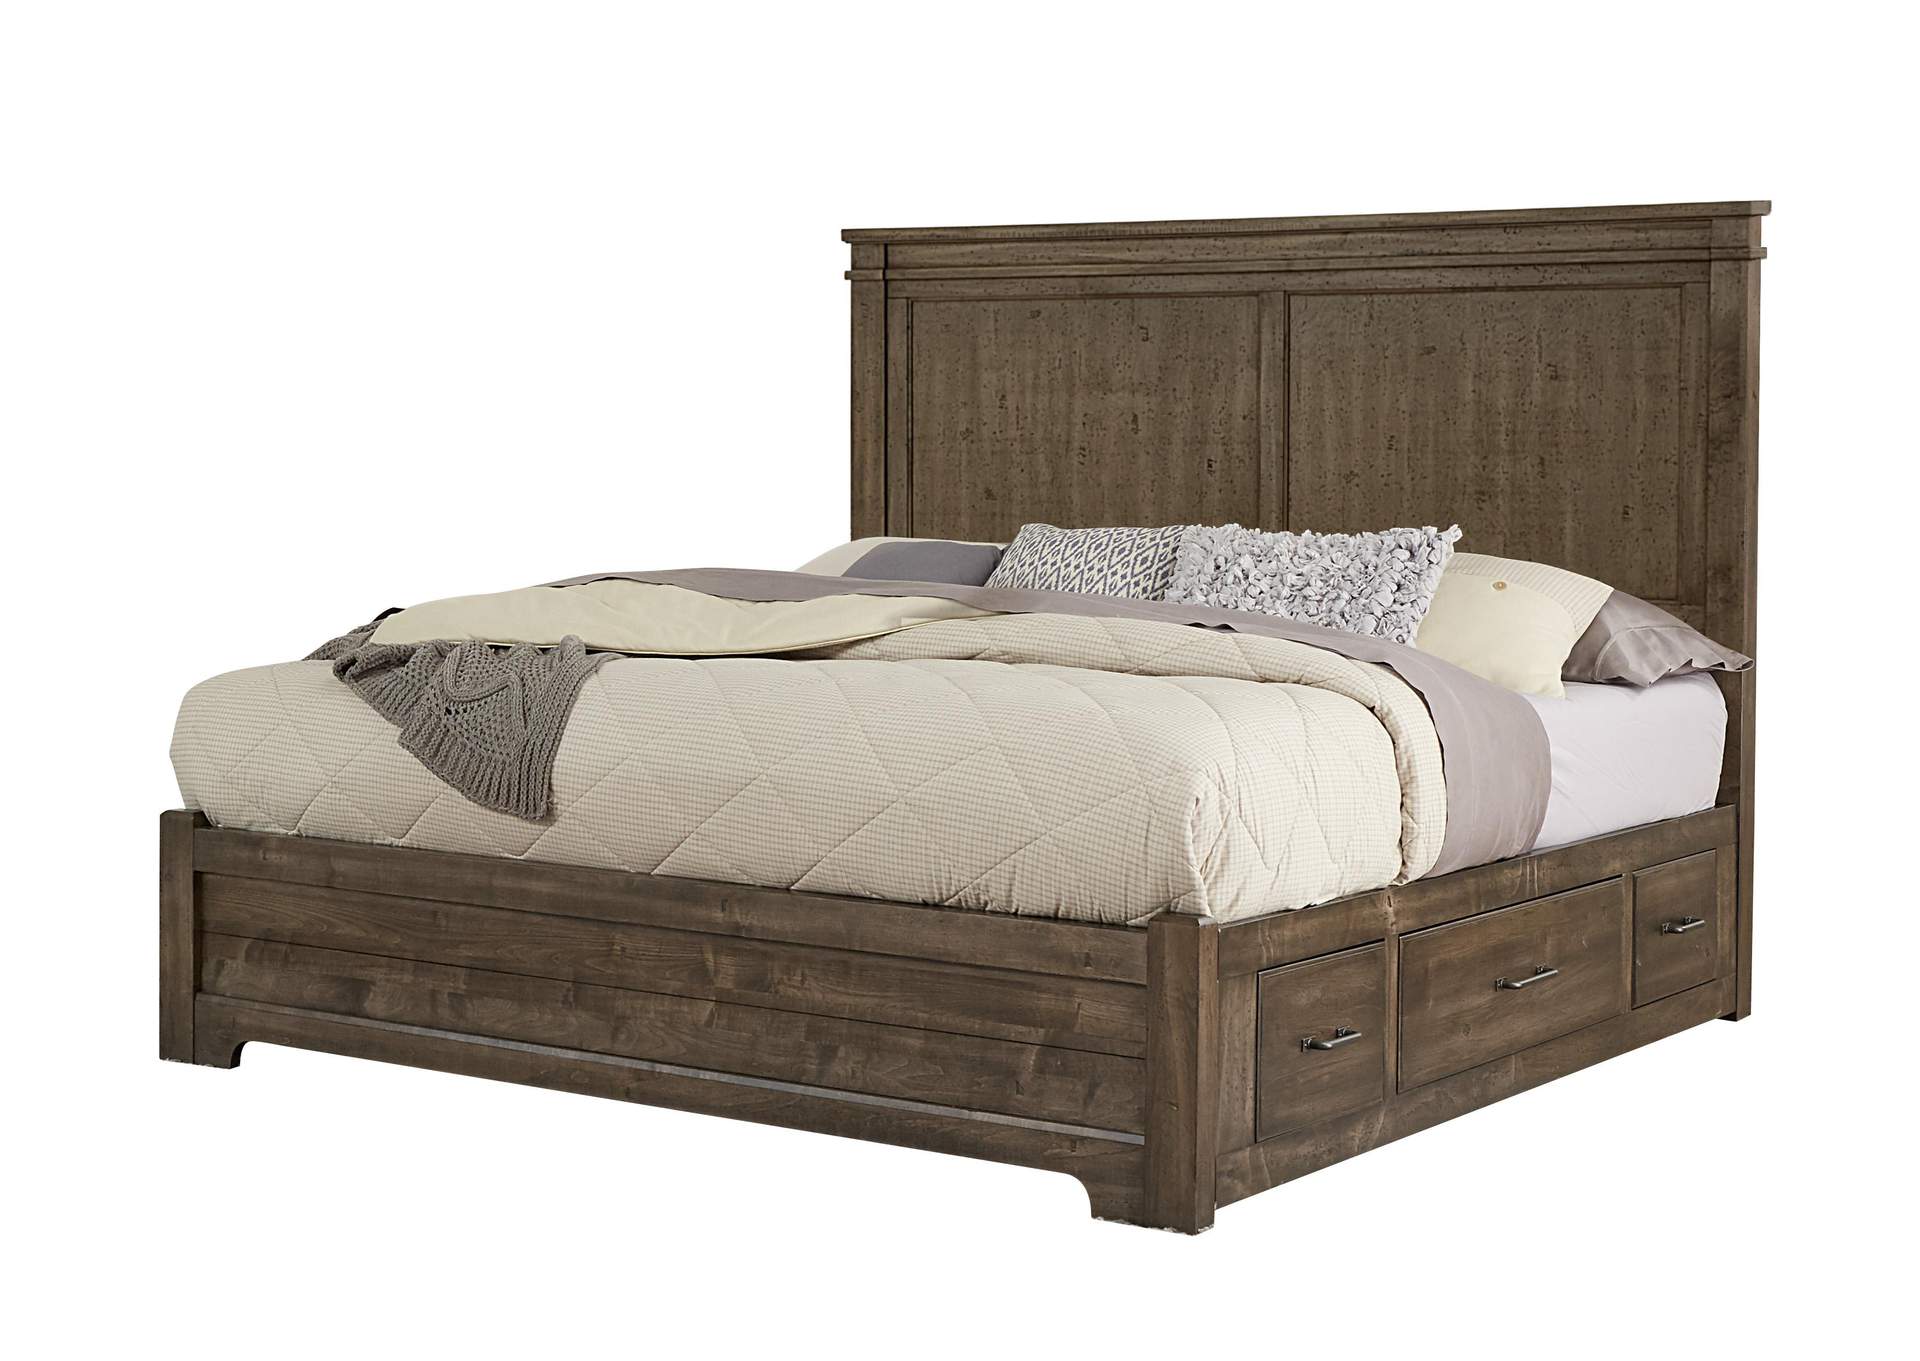 King Mansion Bed,Vaughan-Bassett